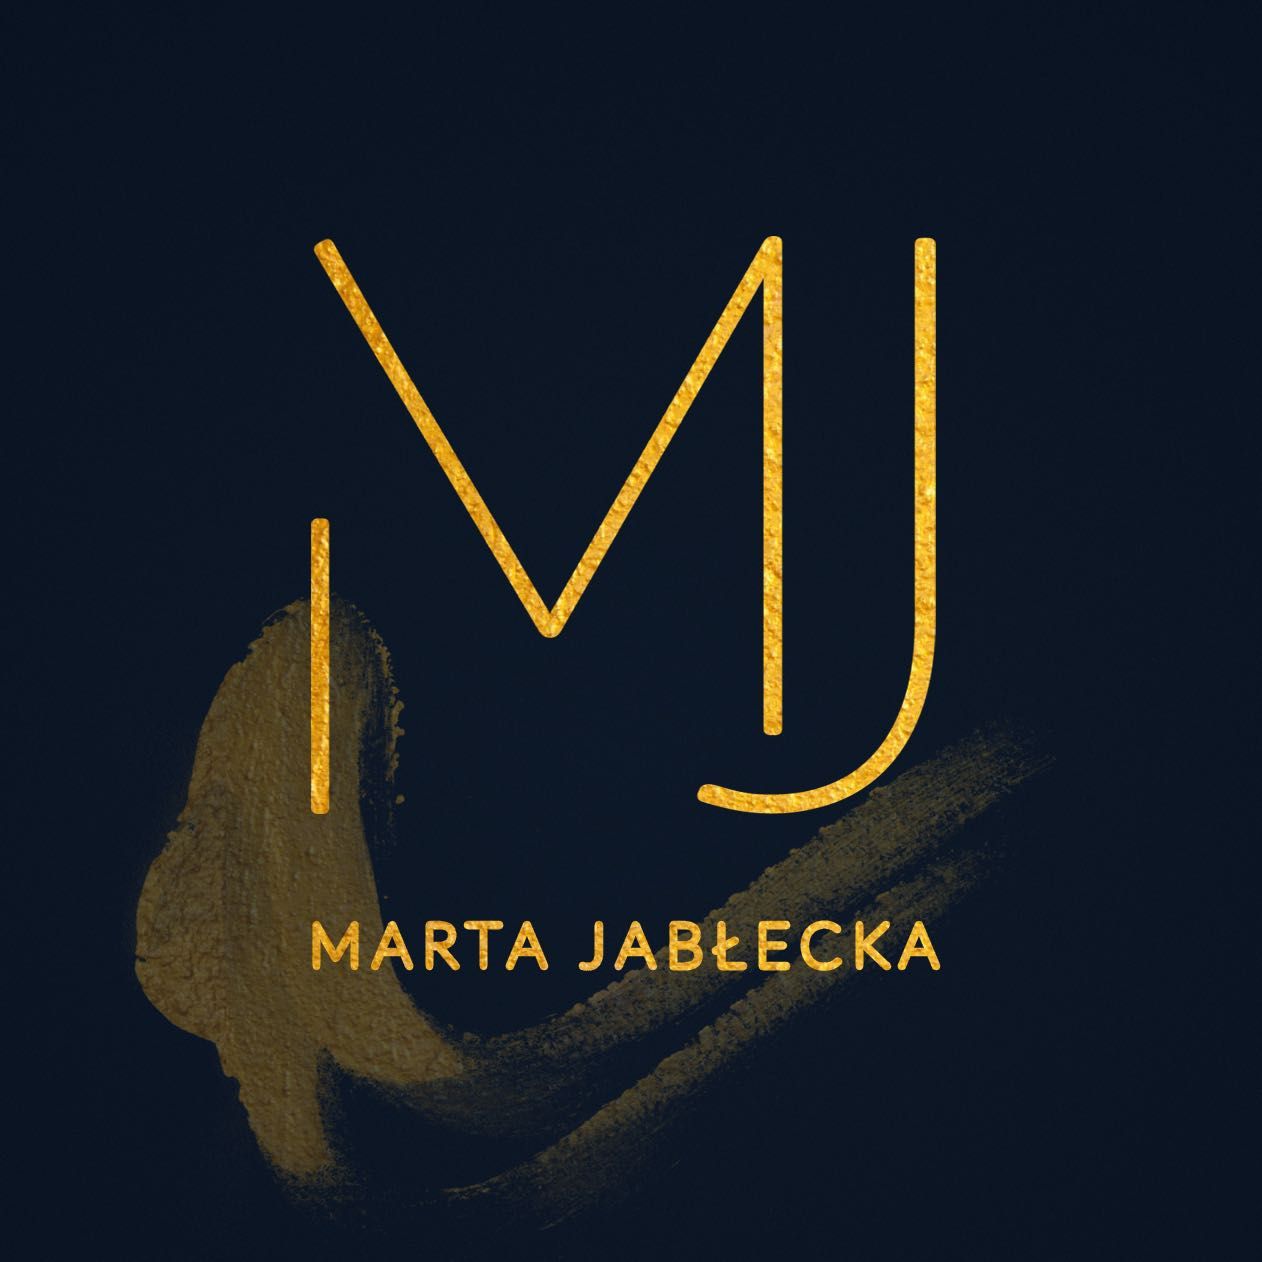 Marta Jabłecka Stylist, Batorego 4, 81-366, Gdynia